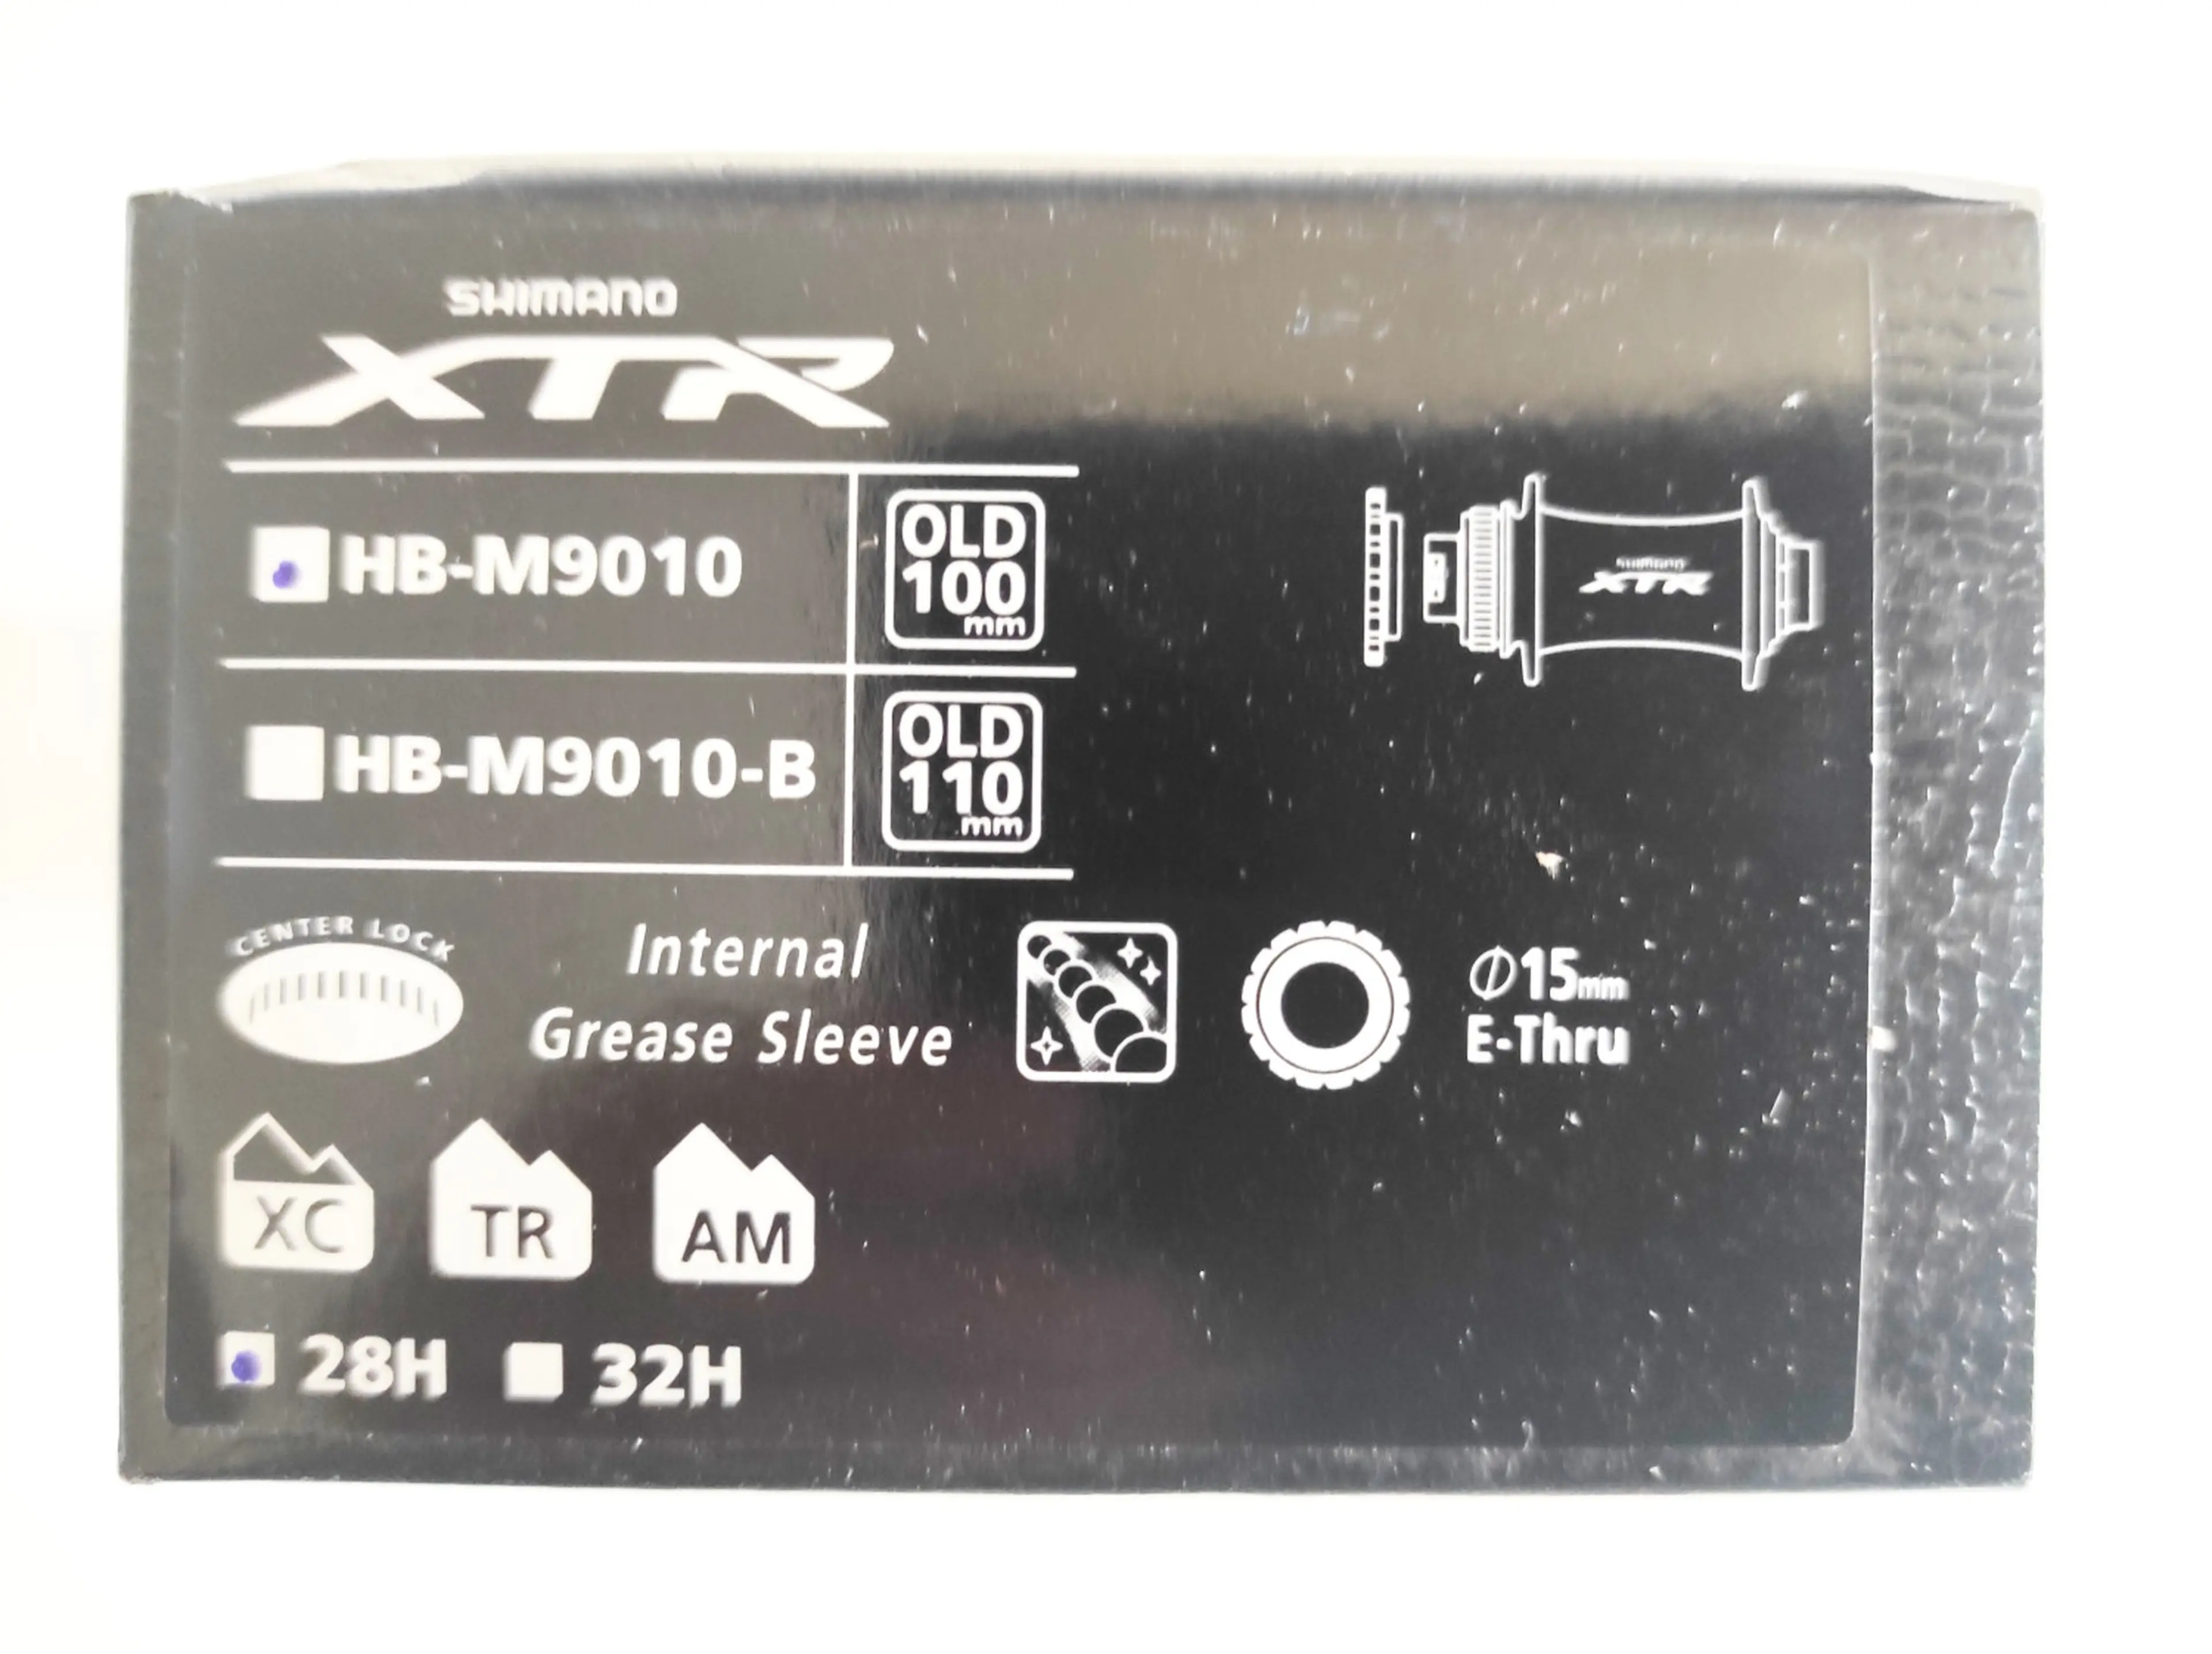 7. Butuc fata Shimano XTR HB-M9010 15x100mm, 28h, disc centerlock nou